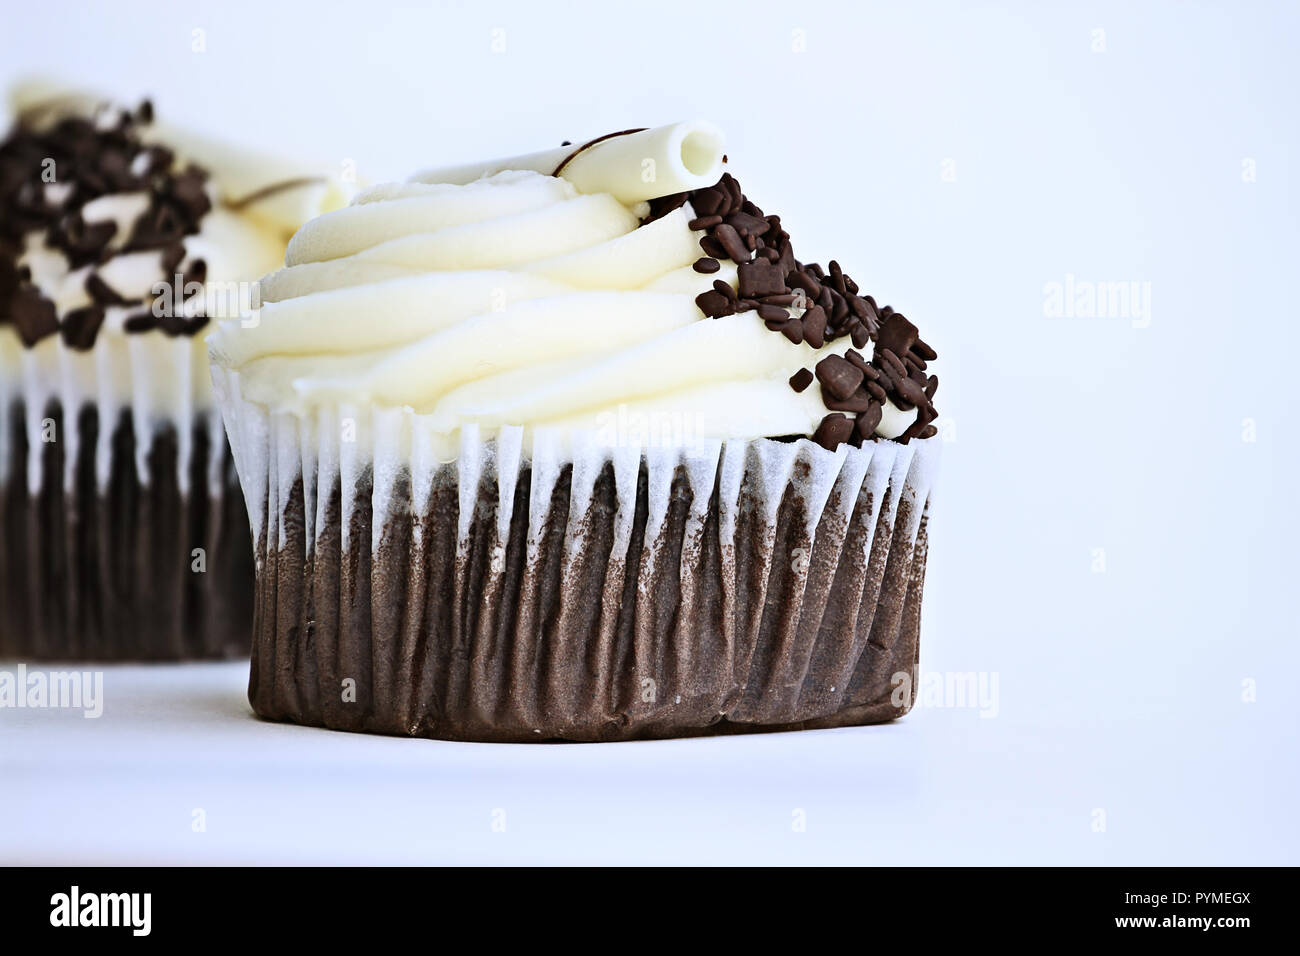 Abbastanza cioccolato cupcake aromatizzato con glassa di crema di burro. Decorate con ricci di cioccolato bianco e scaglie di cioccolato fondente. Foto Stock